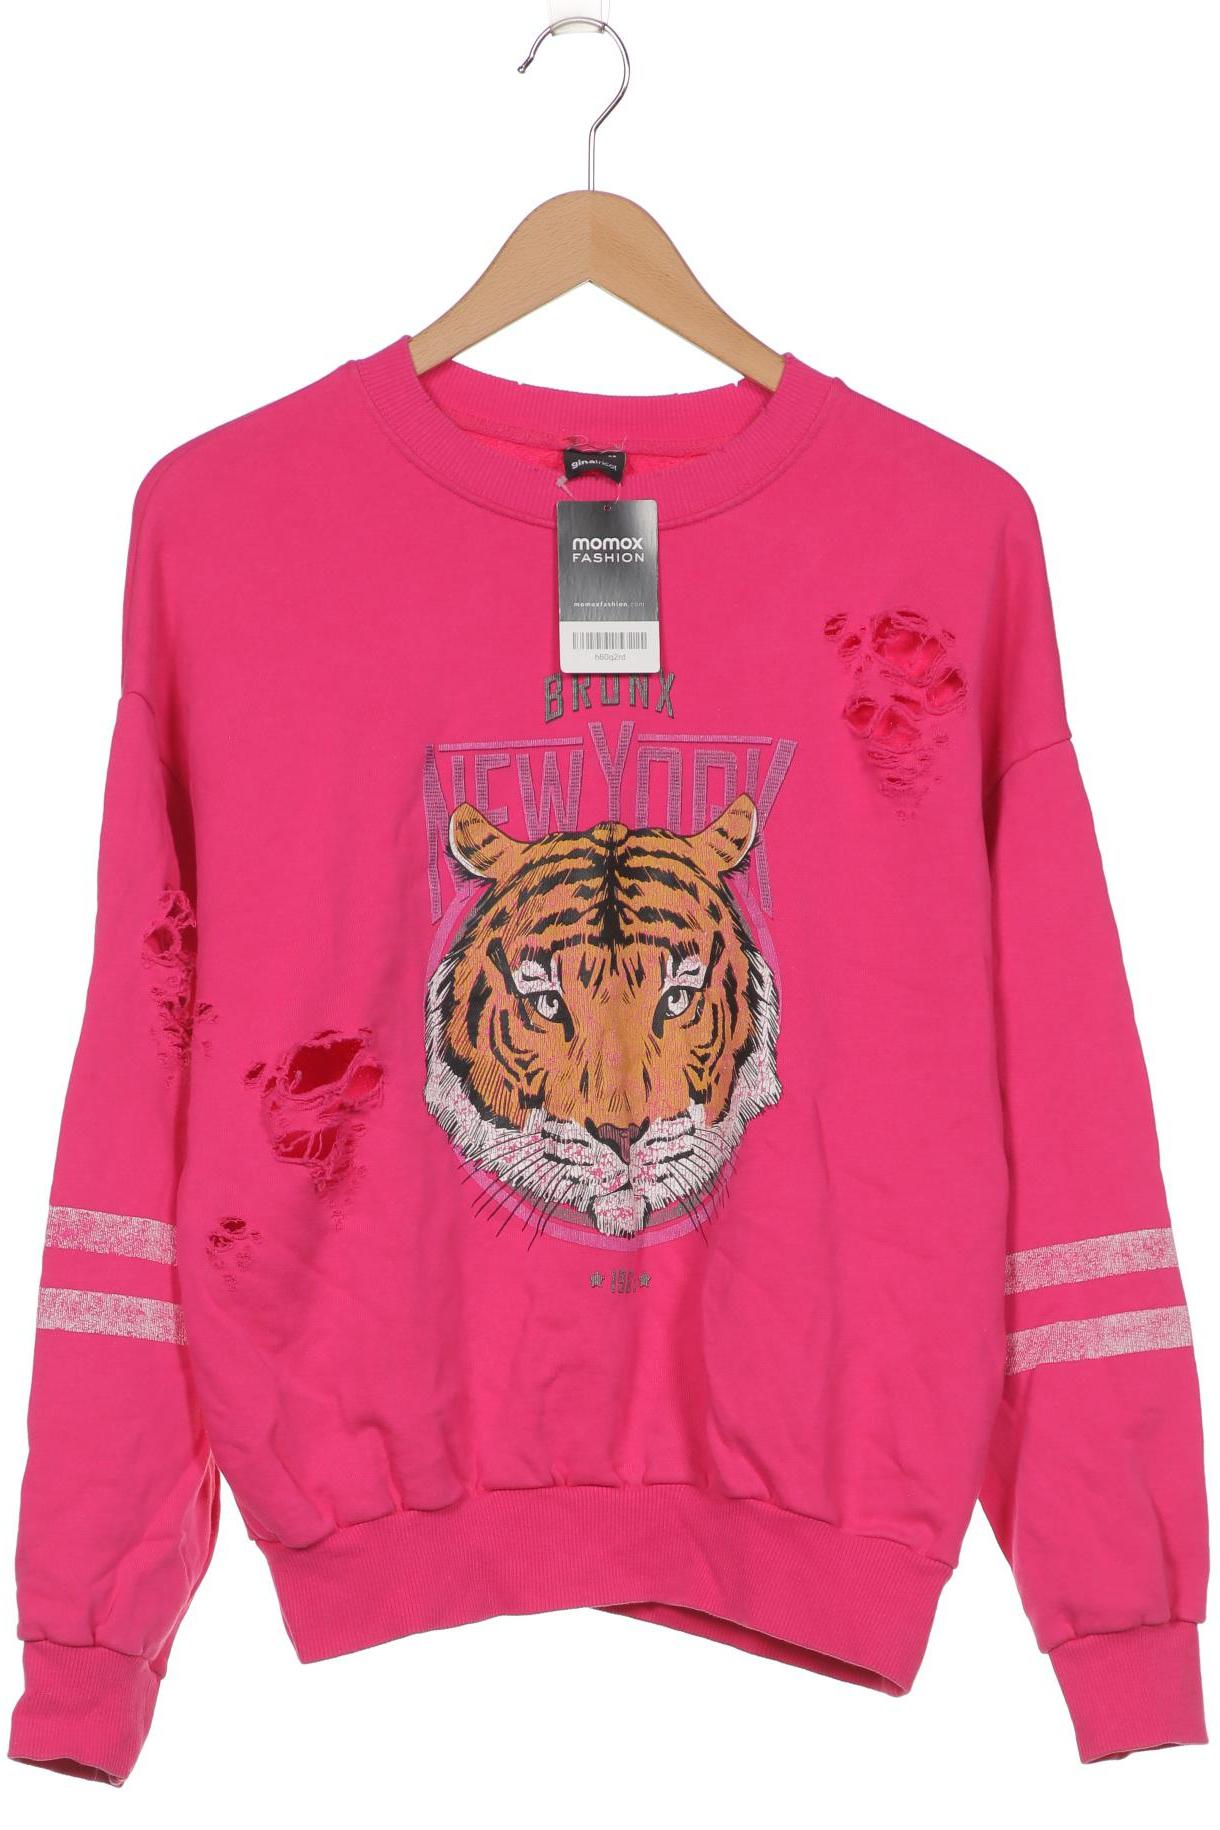 Gina Tricot Damen Sweatshirt, pink von Gina Tricot